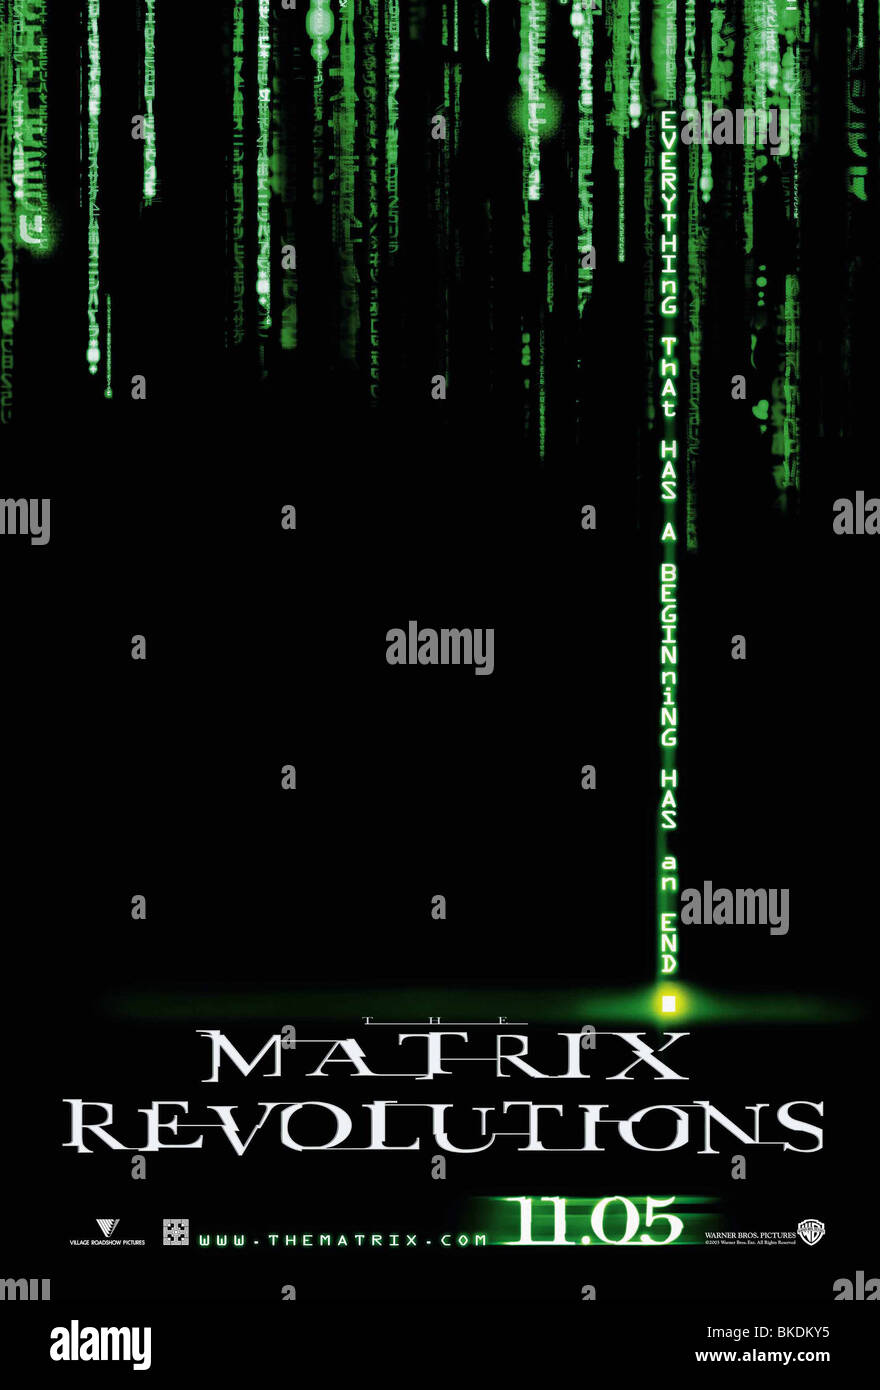 THE MATRIX REVOLUTIONS (2003) THE MATRIX 3 (ALT) POSTER MTX3 002-P2 Stock Photo